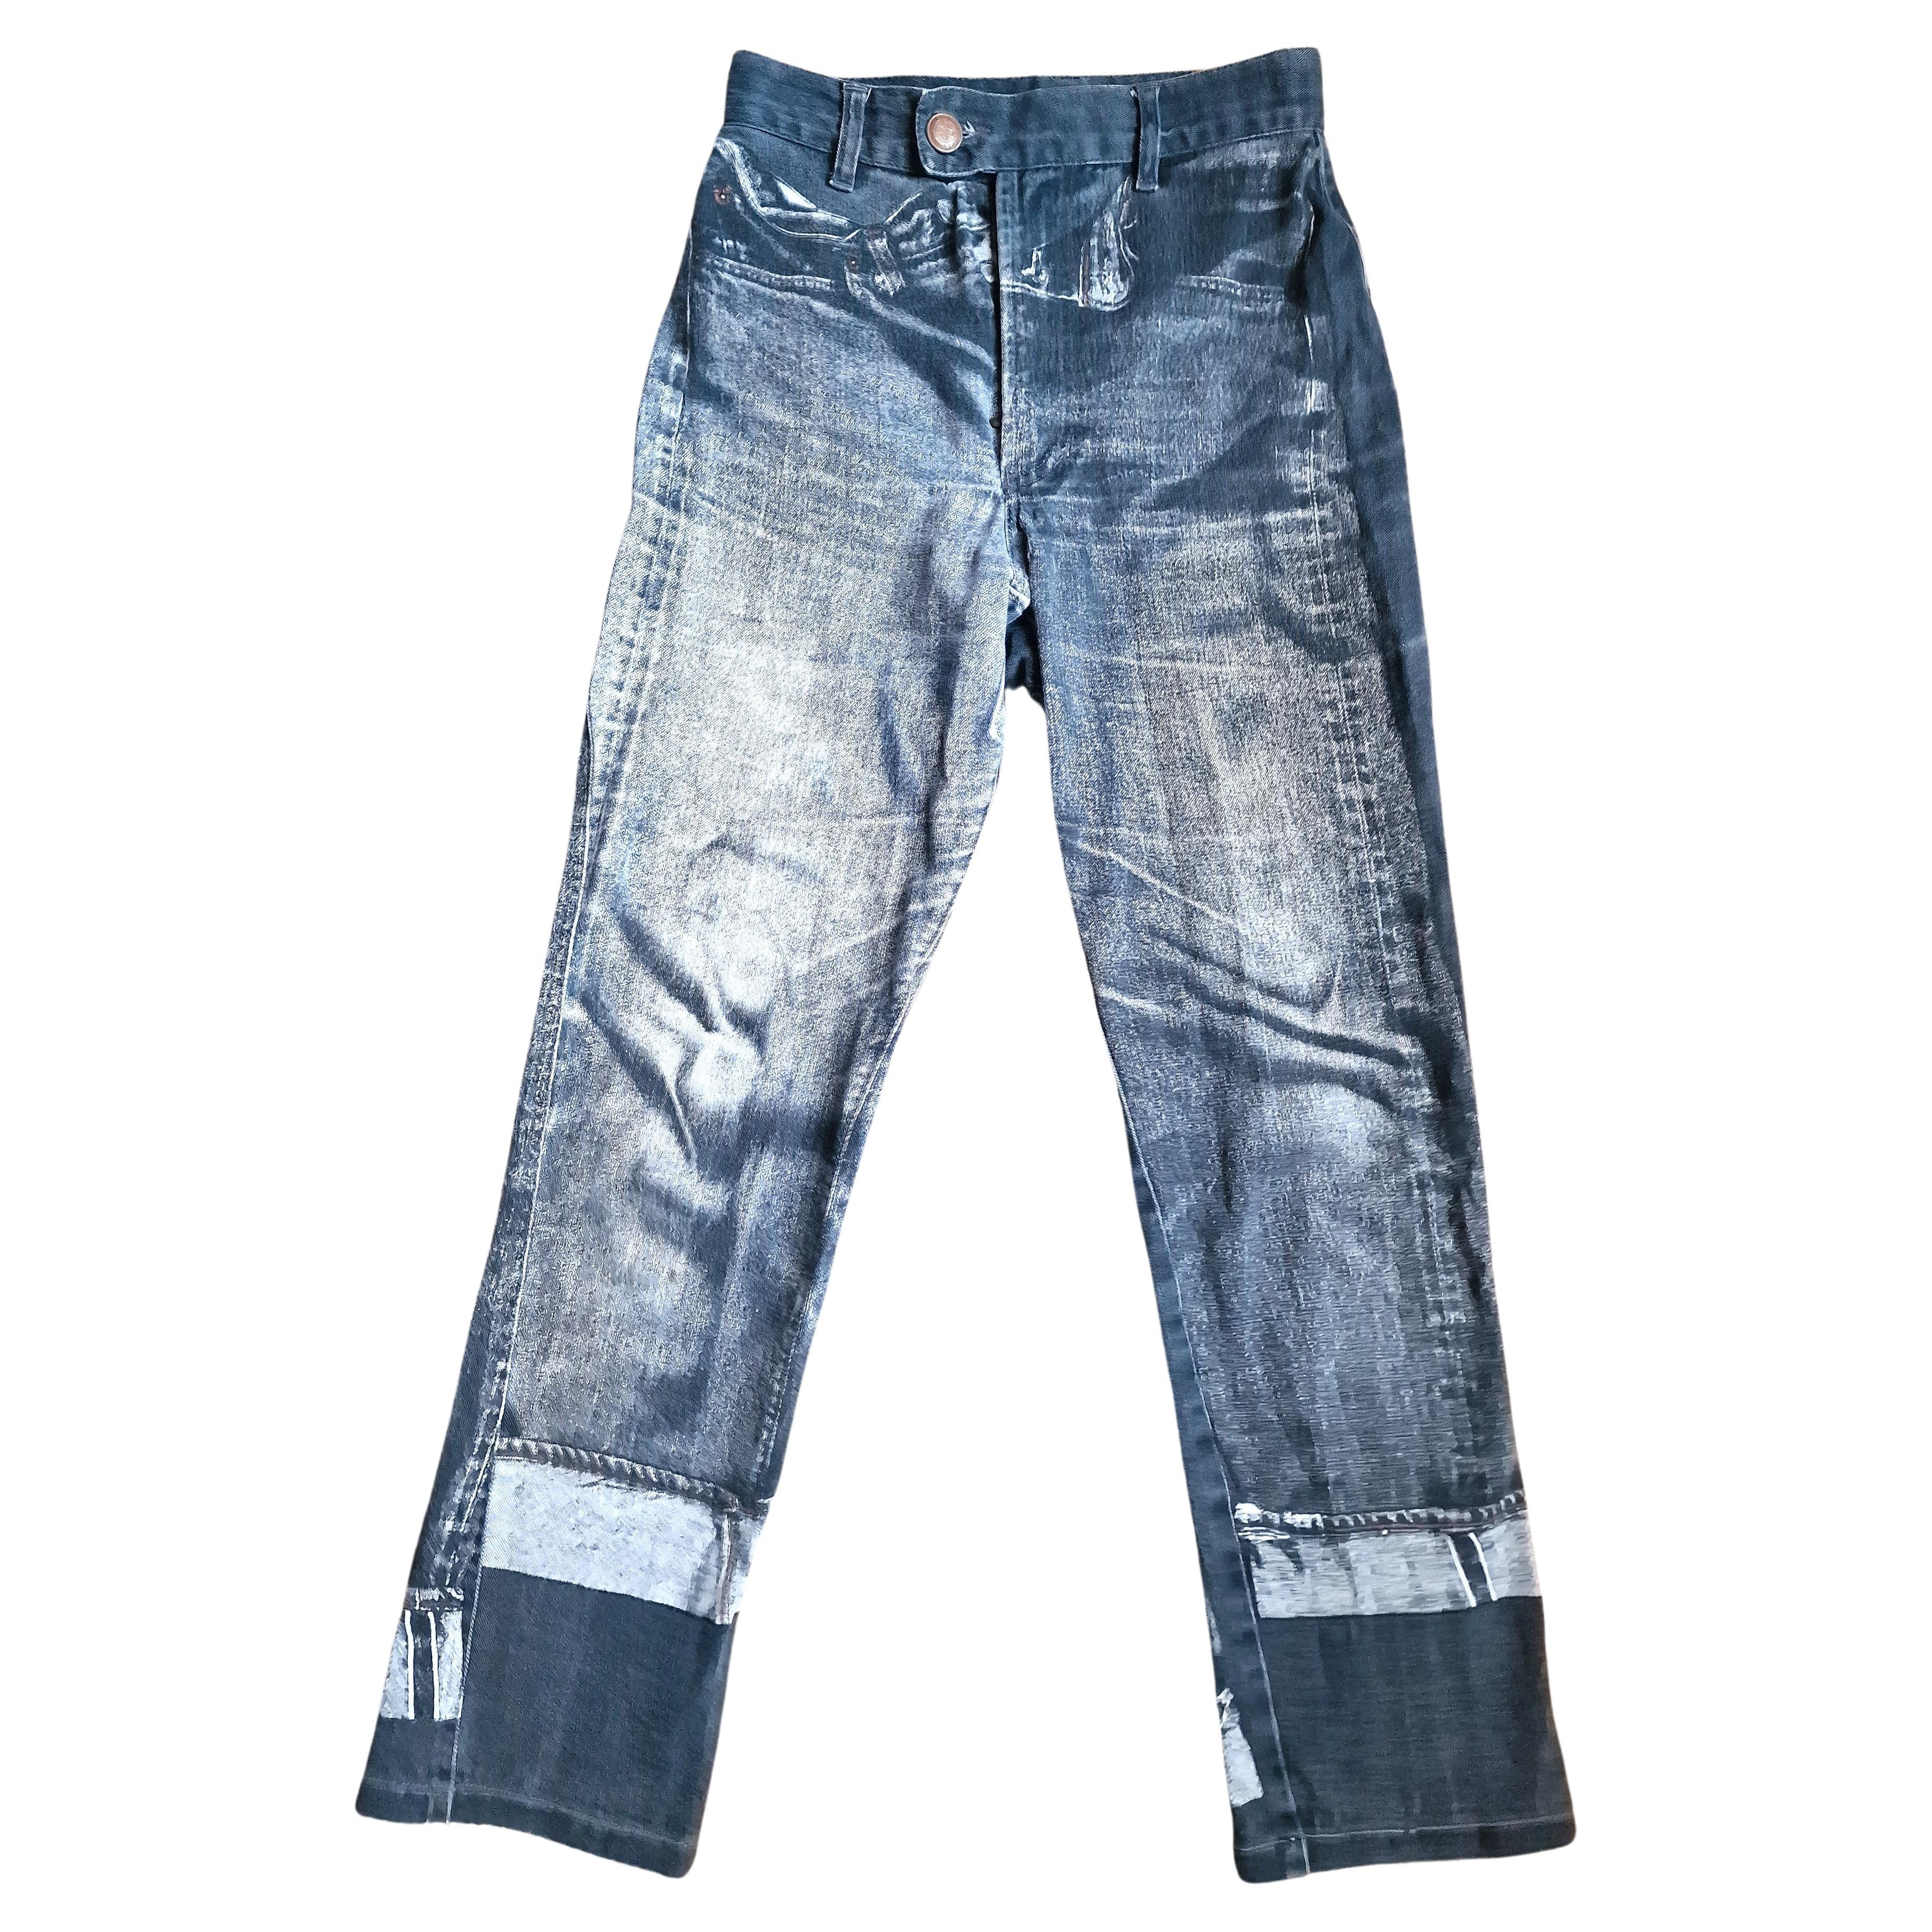 Jean Paul Gaultier Trompe L'Oeil Denim Optical Illusion Small XS Jeans Pants For Sale